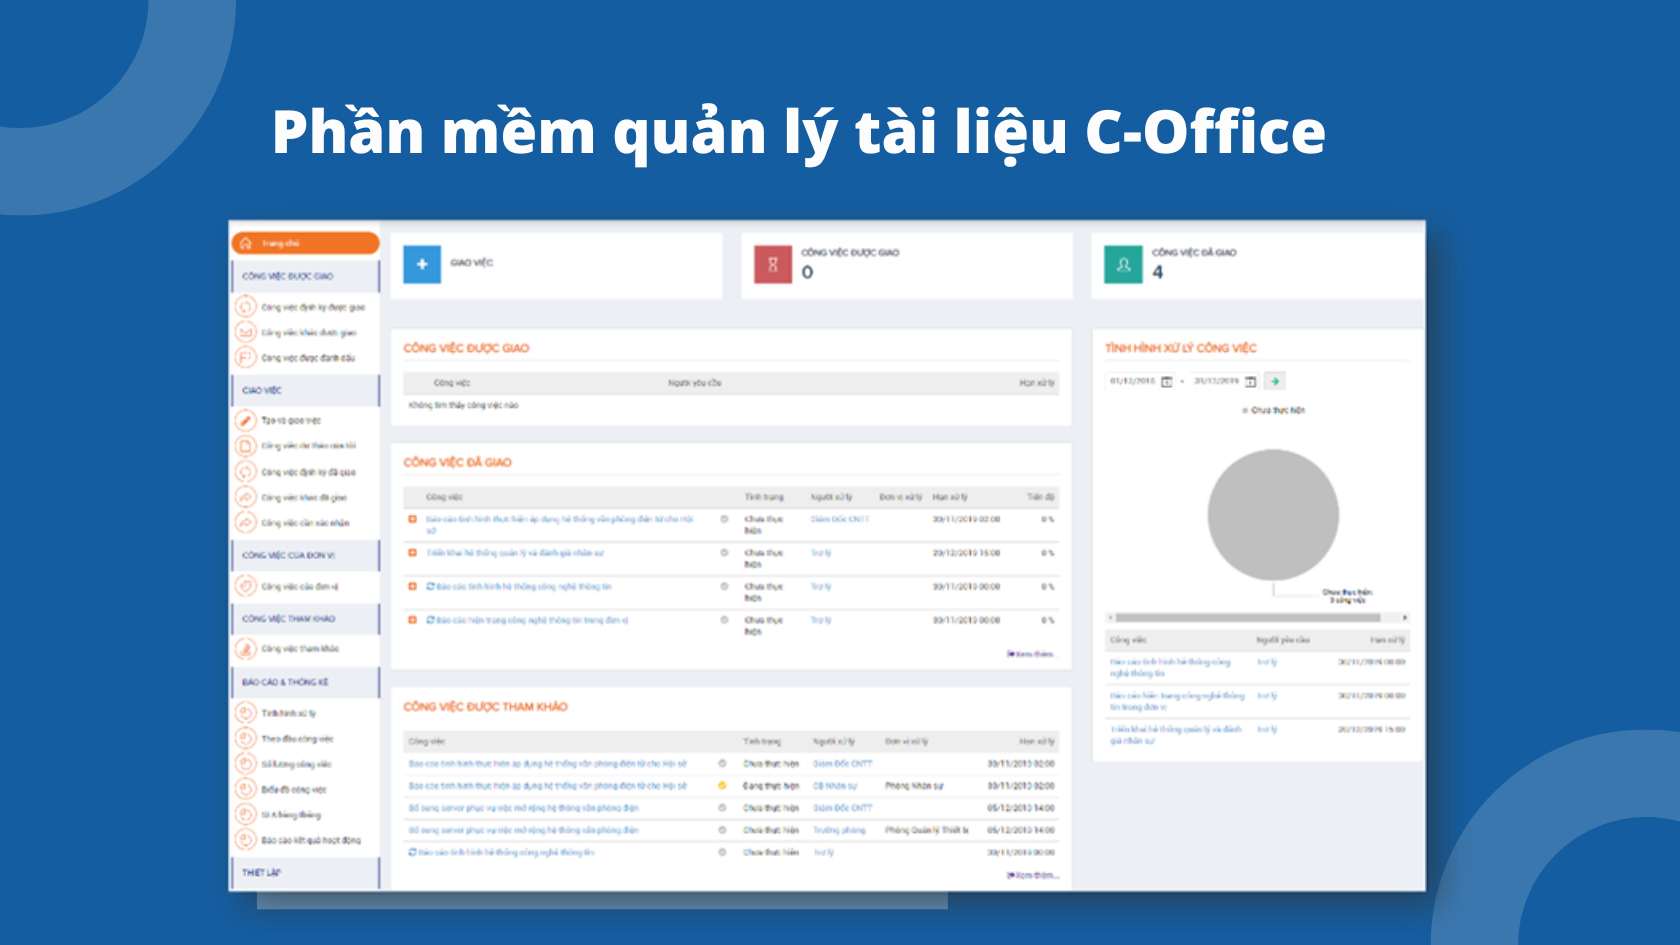 Phần mềm quản lý tài liệu C-Office